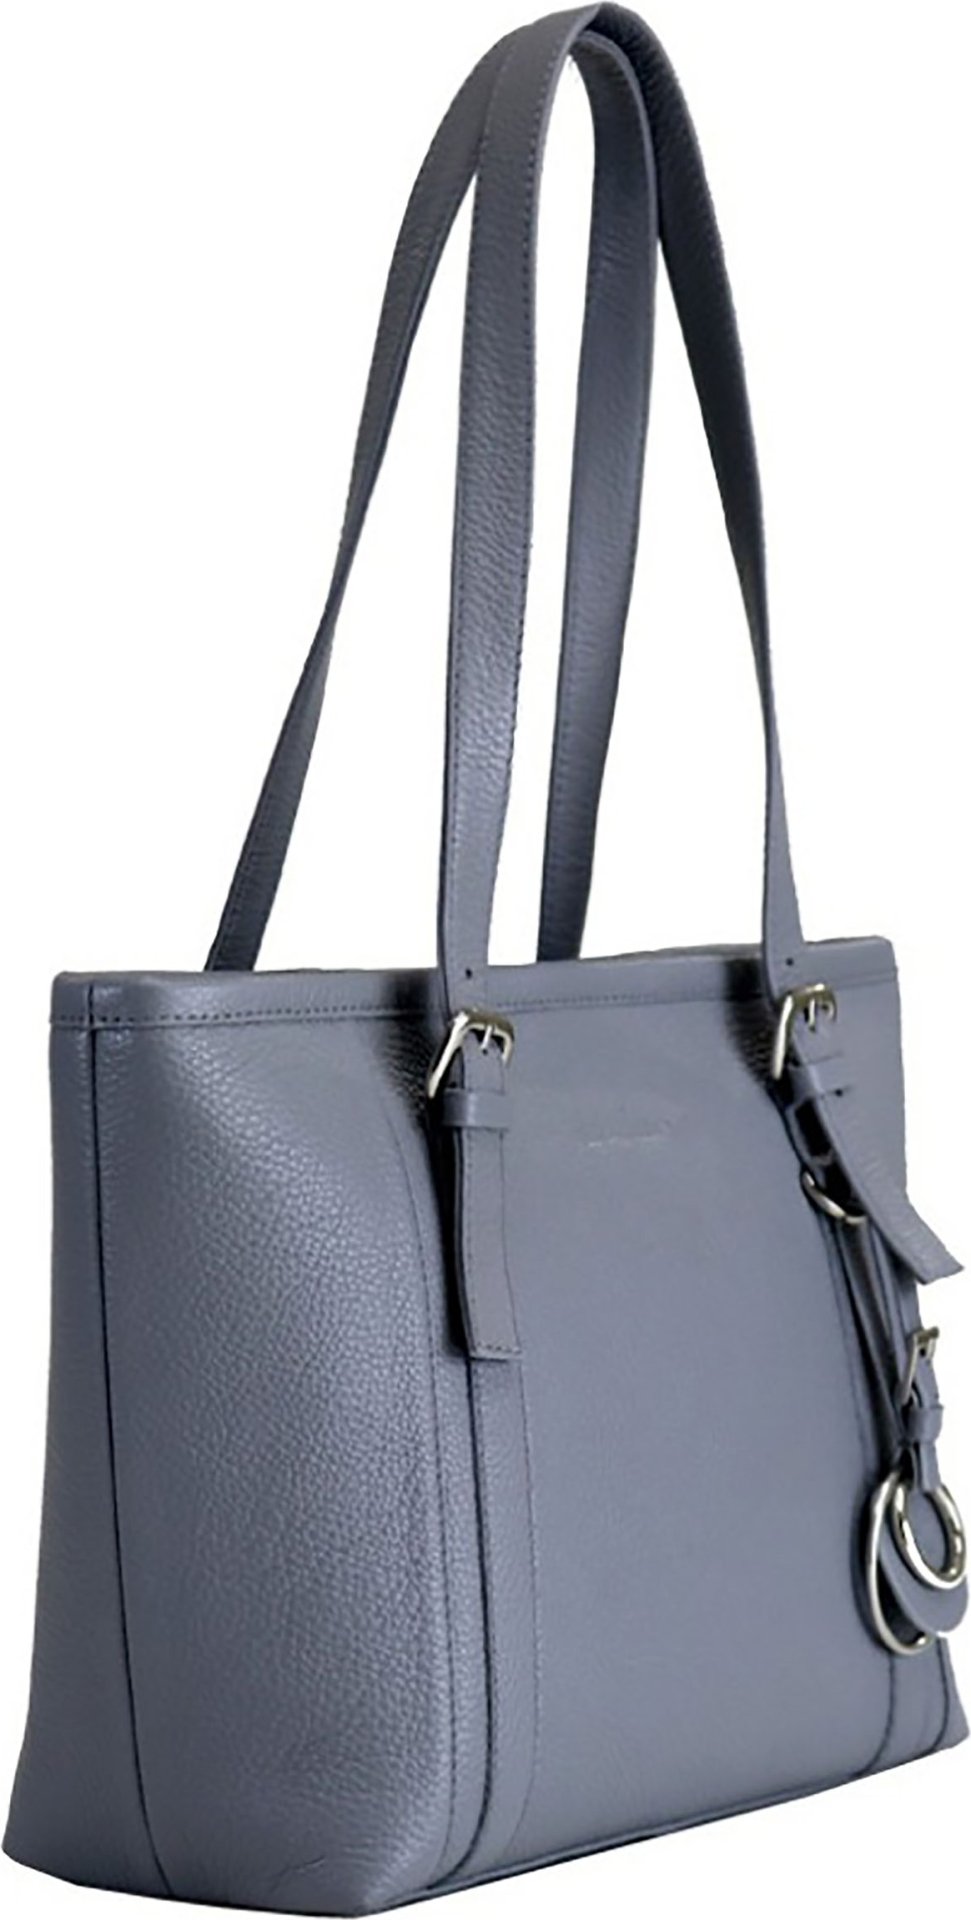 Жіноча сумка формату А4 з натуральної шкіри сірого кольору Issa Hara Ірена (27108)